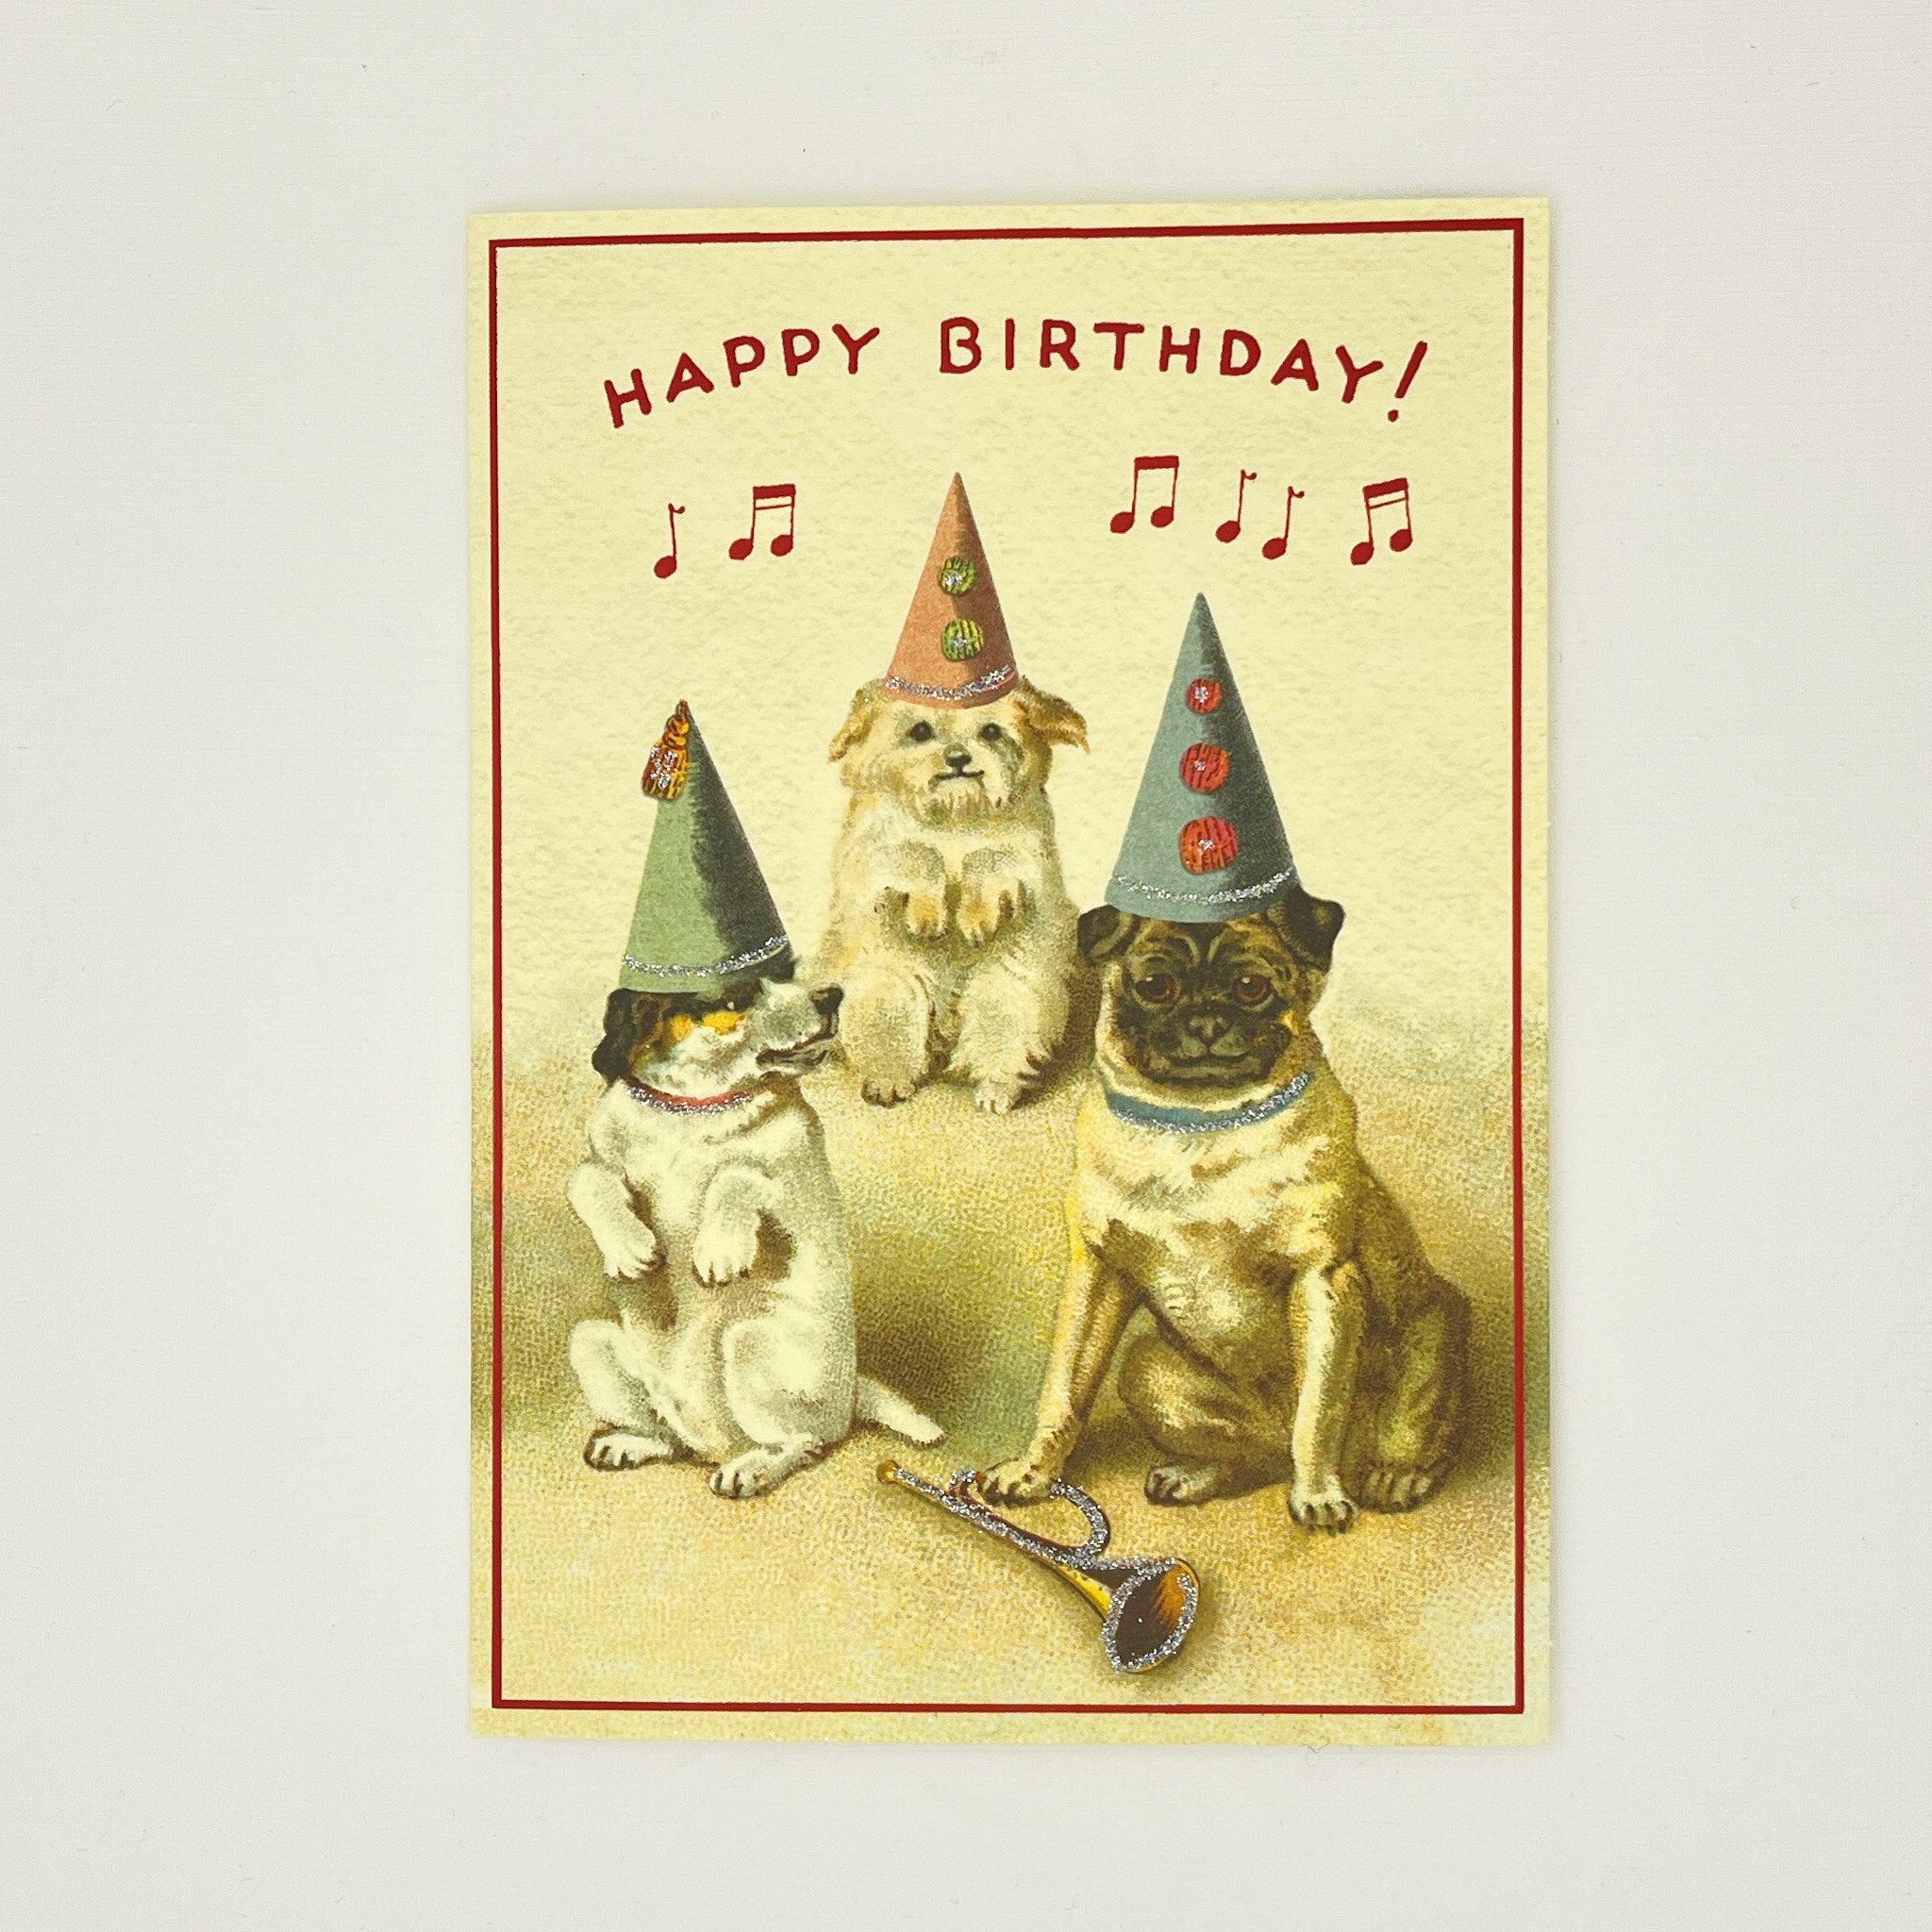 Happy Birthday Dogs